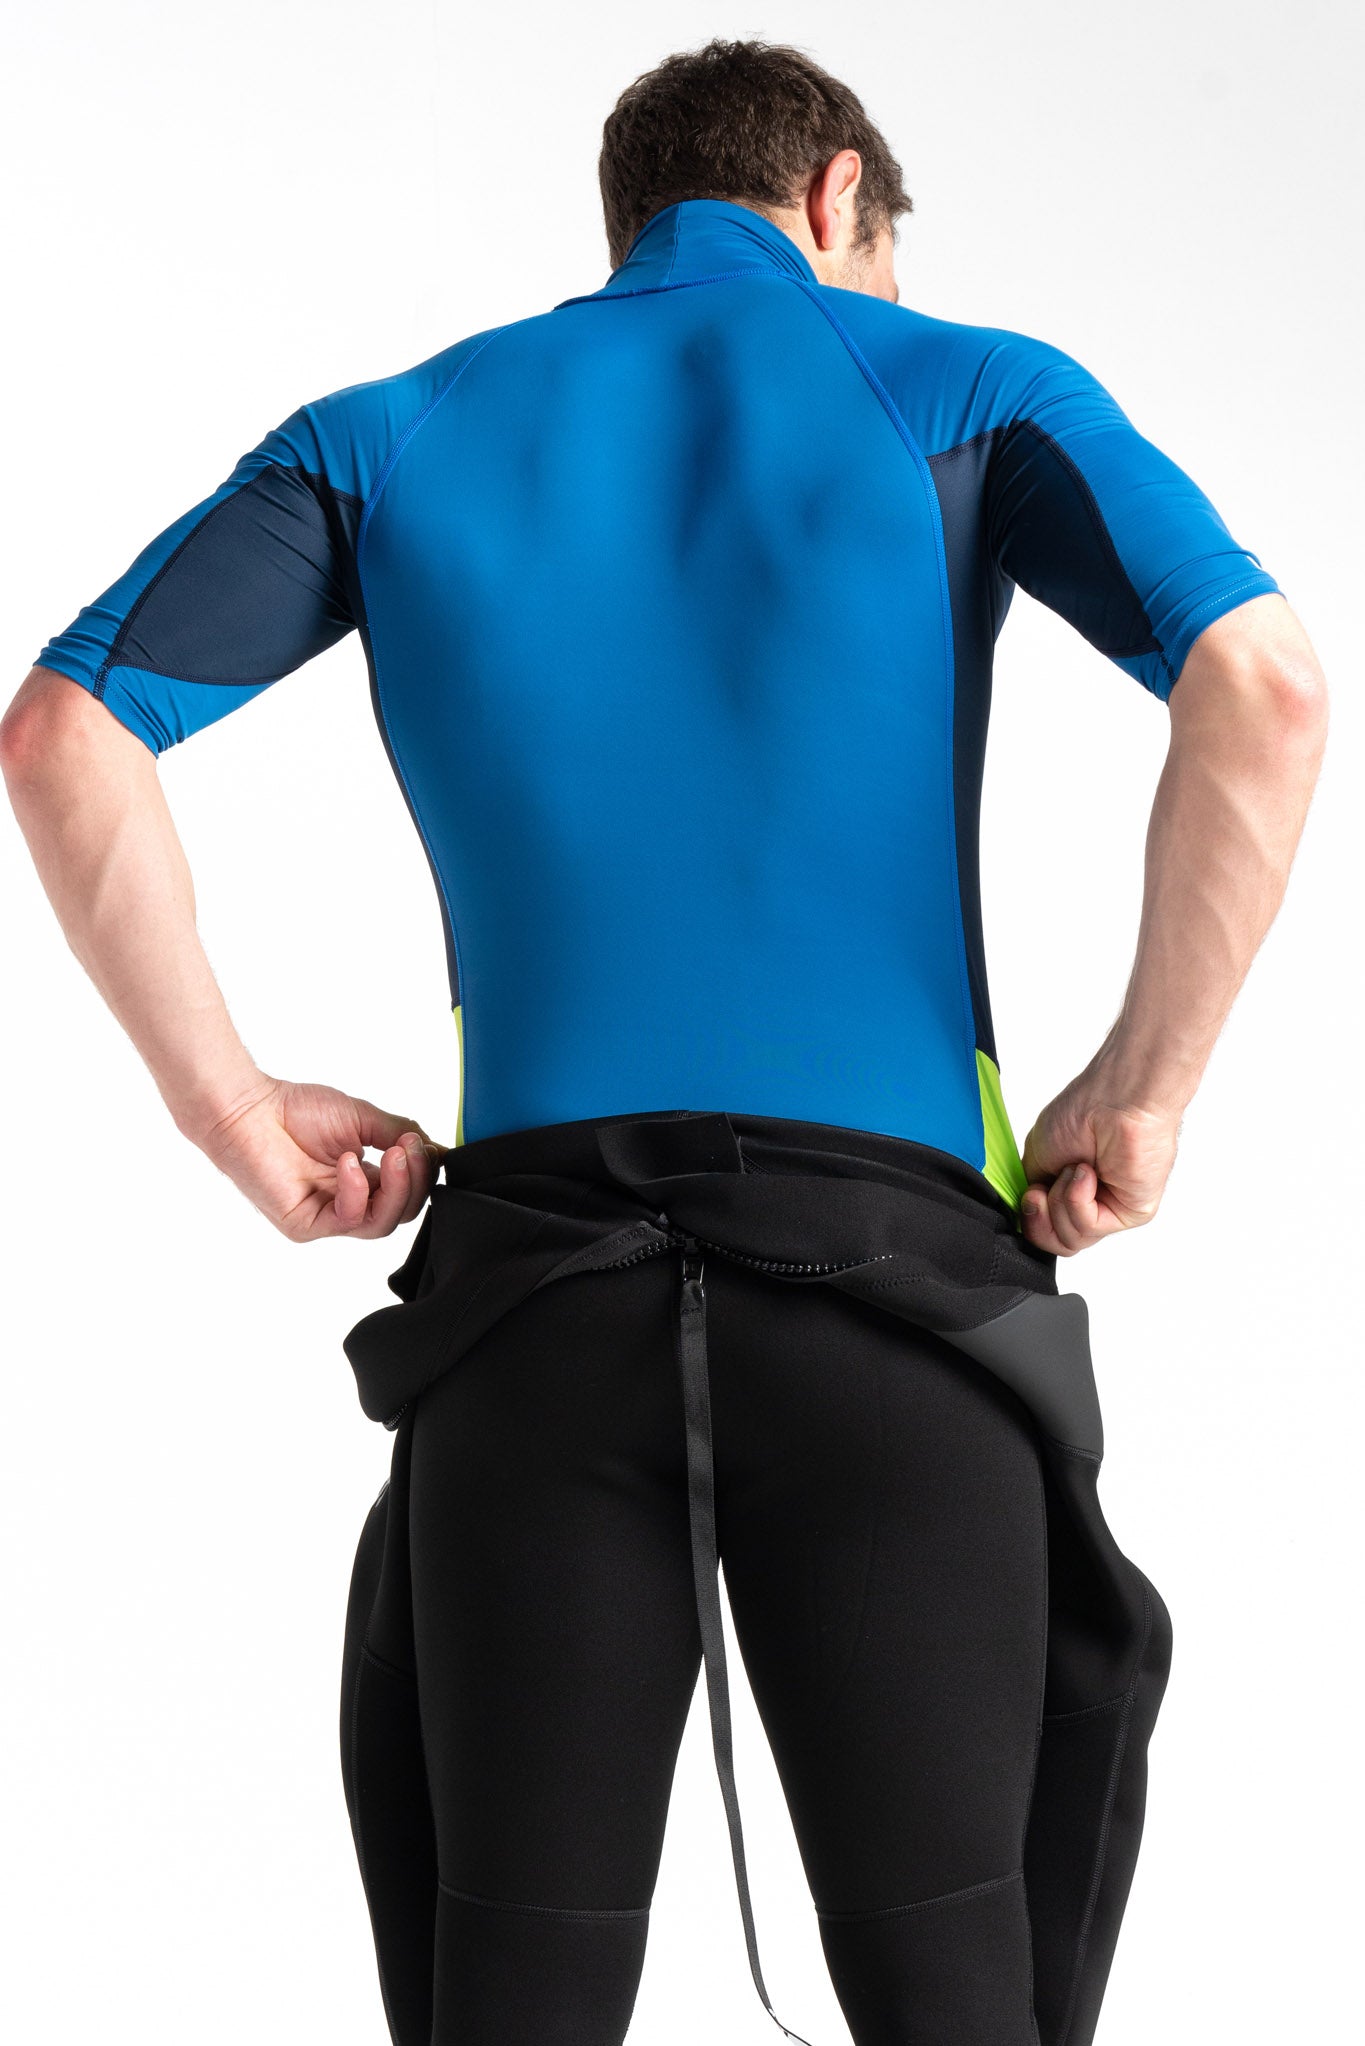 C-Skins UV50 Skins Turtle Neck Rash Vest in Slate Blue/Navy/Lime - Back